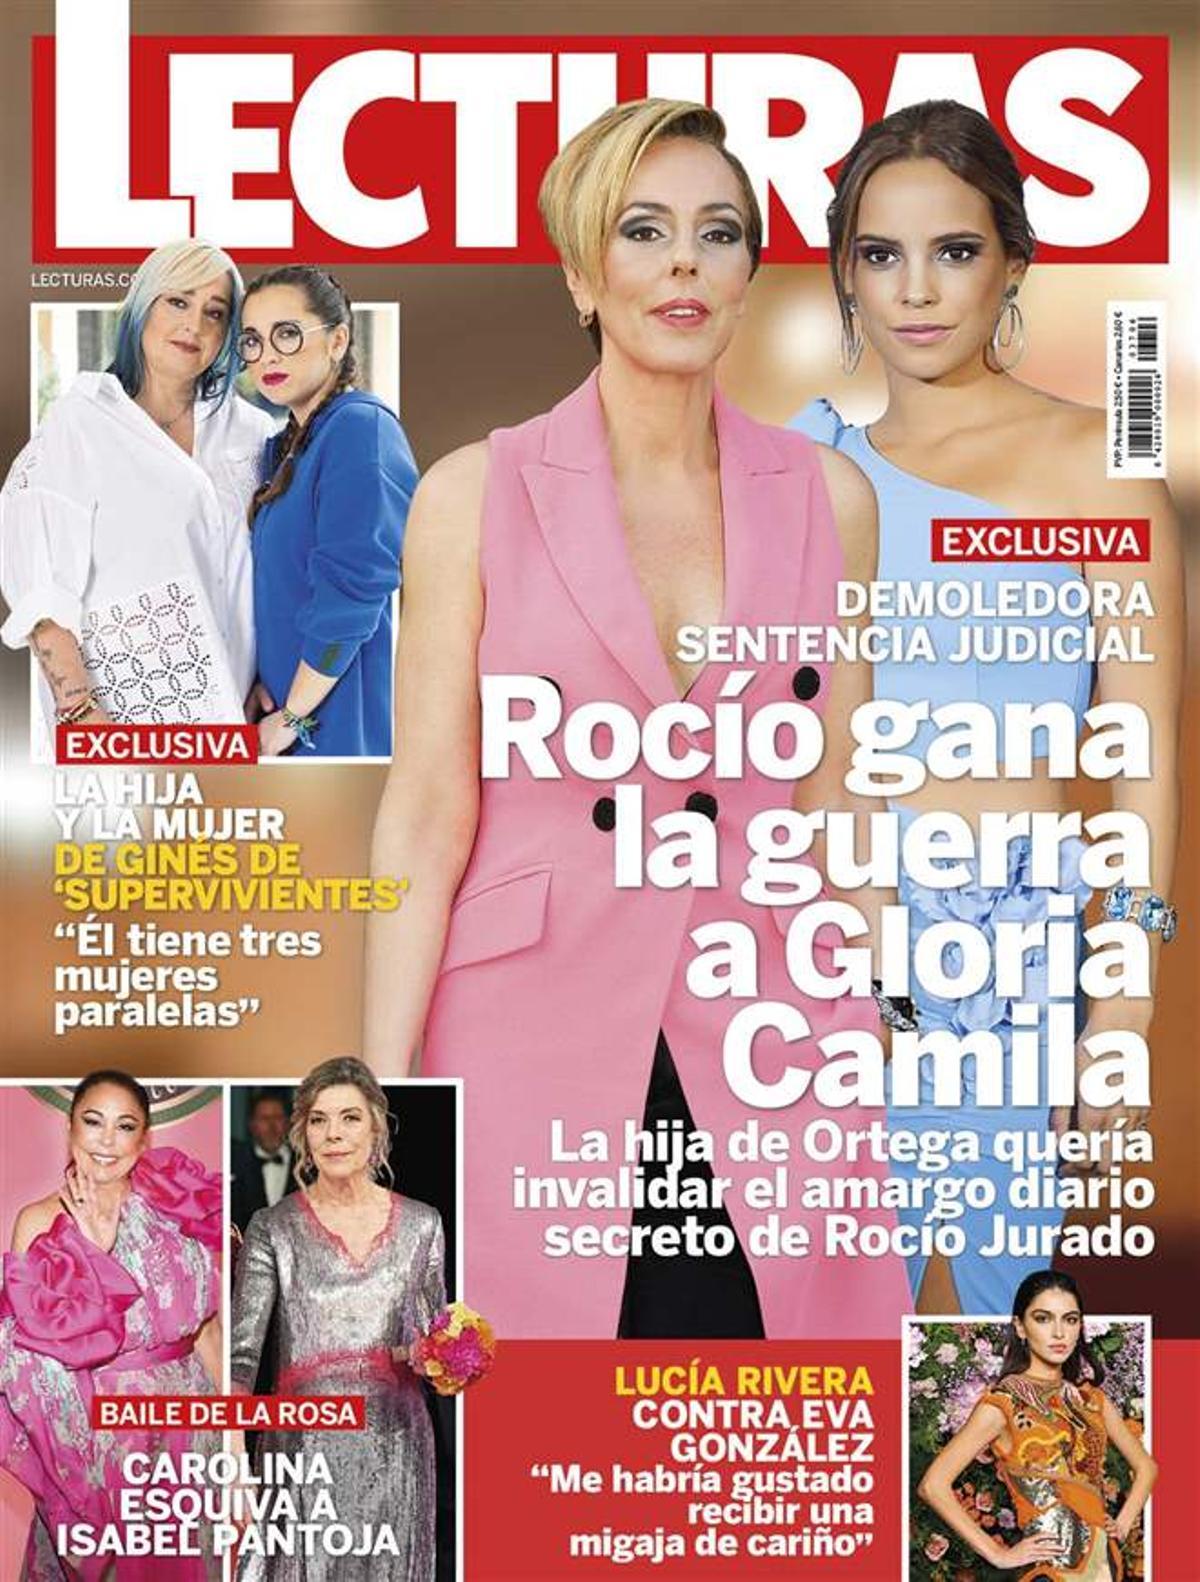 Lecturas: Rocío gana la guerra a Gloria Camila